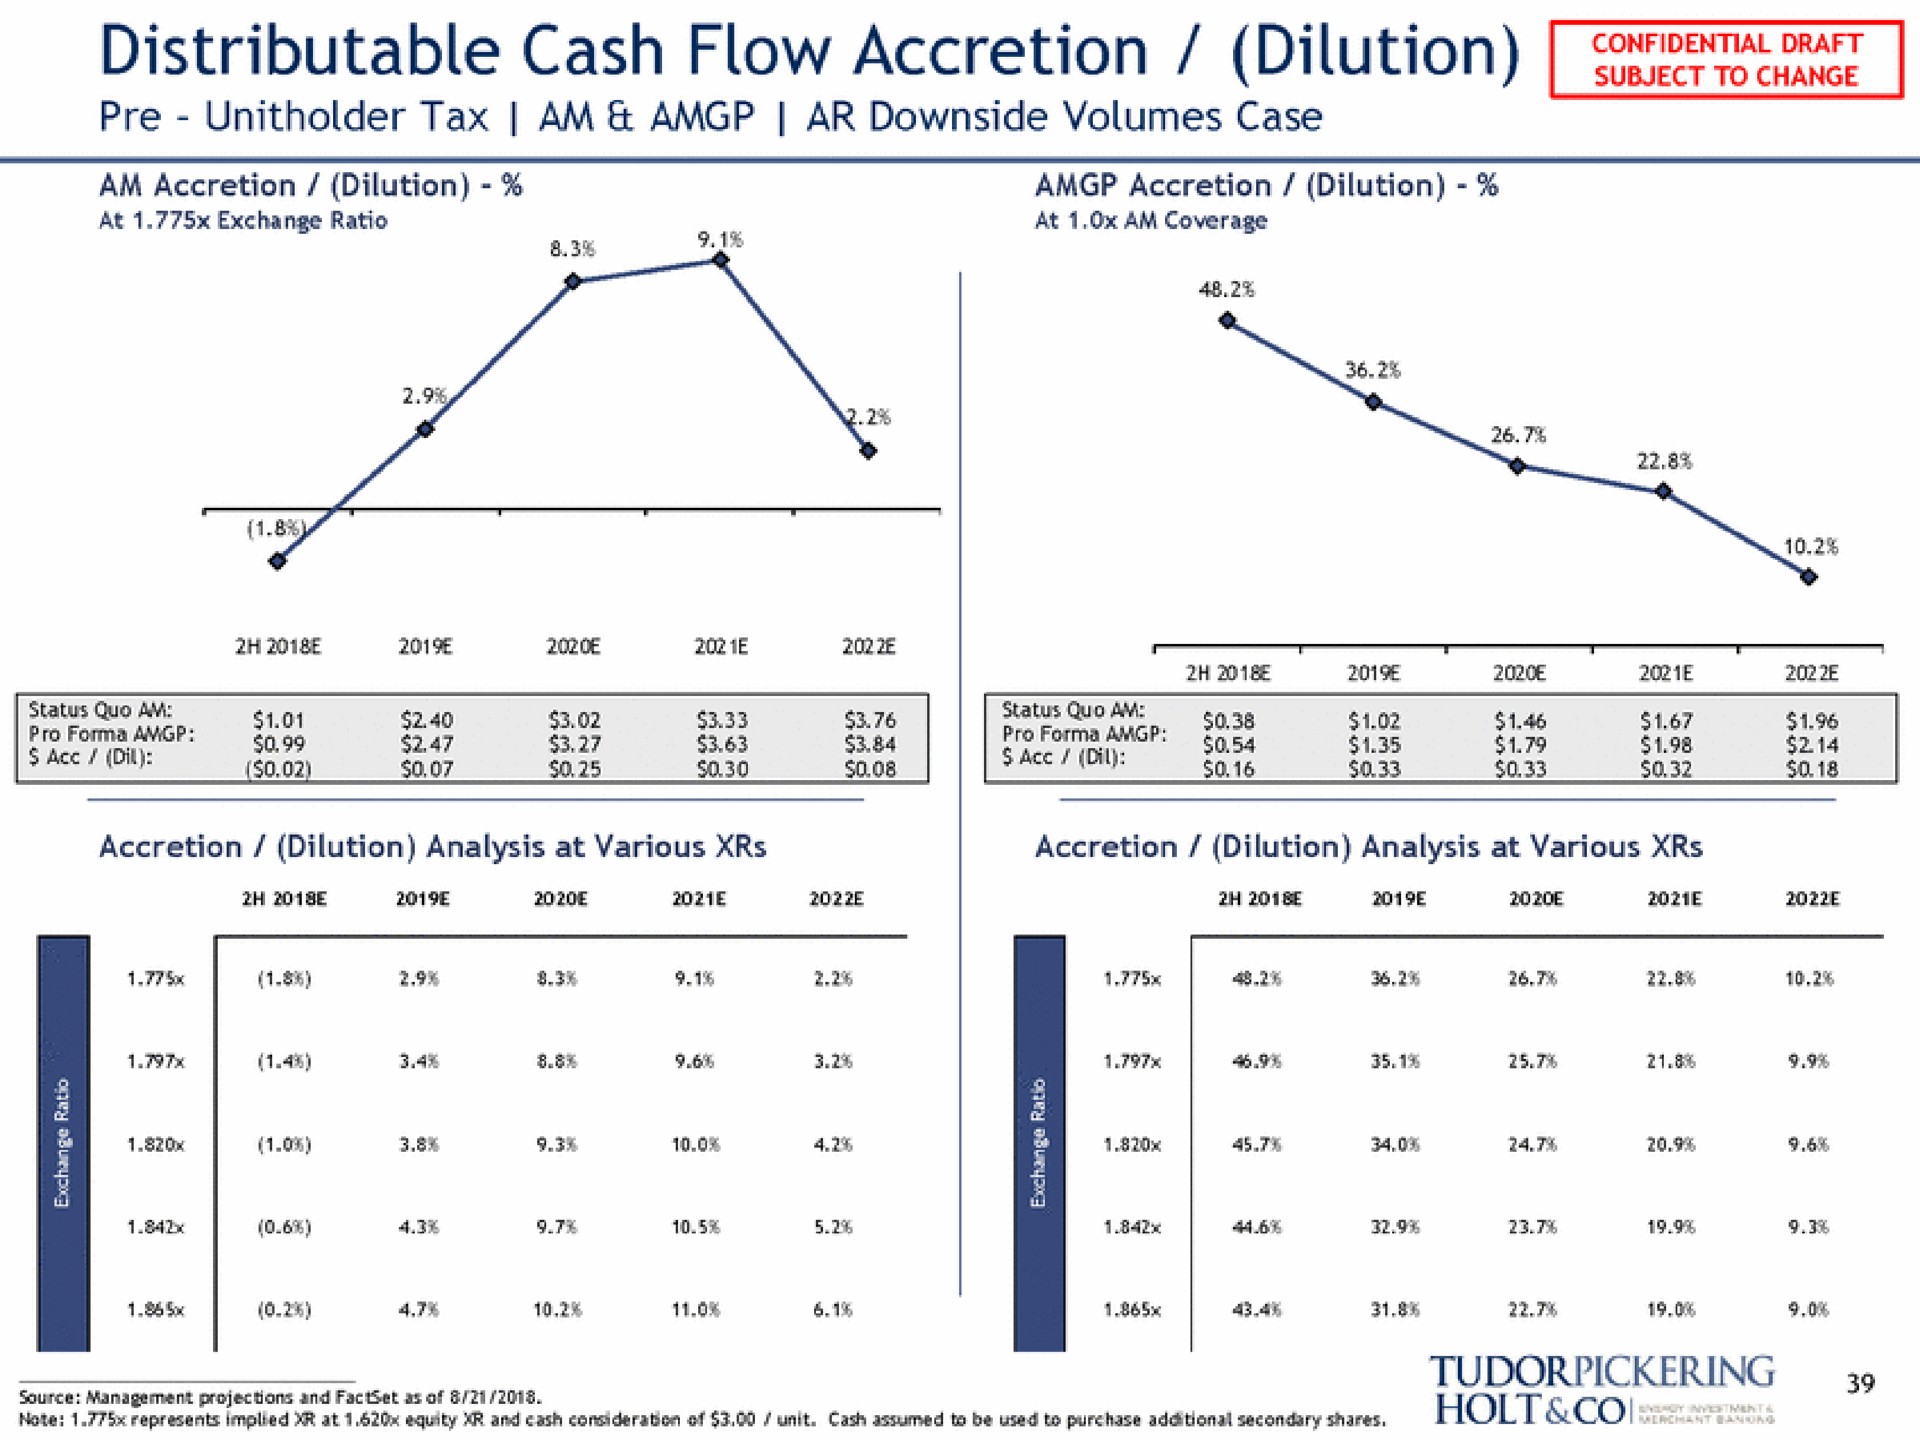 distributable cash flow accretion dilution a | Tudor, Pickering, Holt & Co